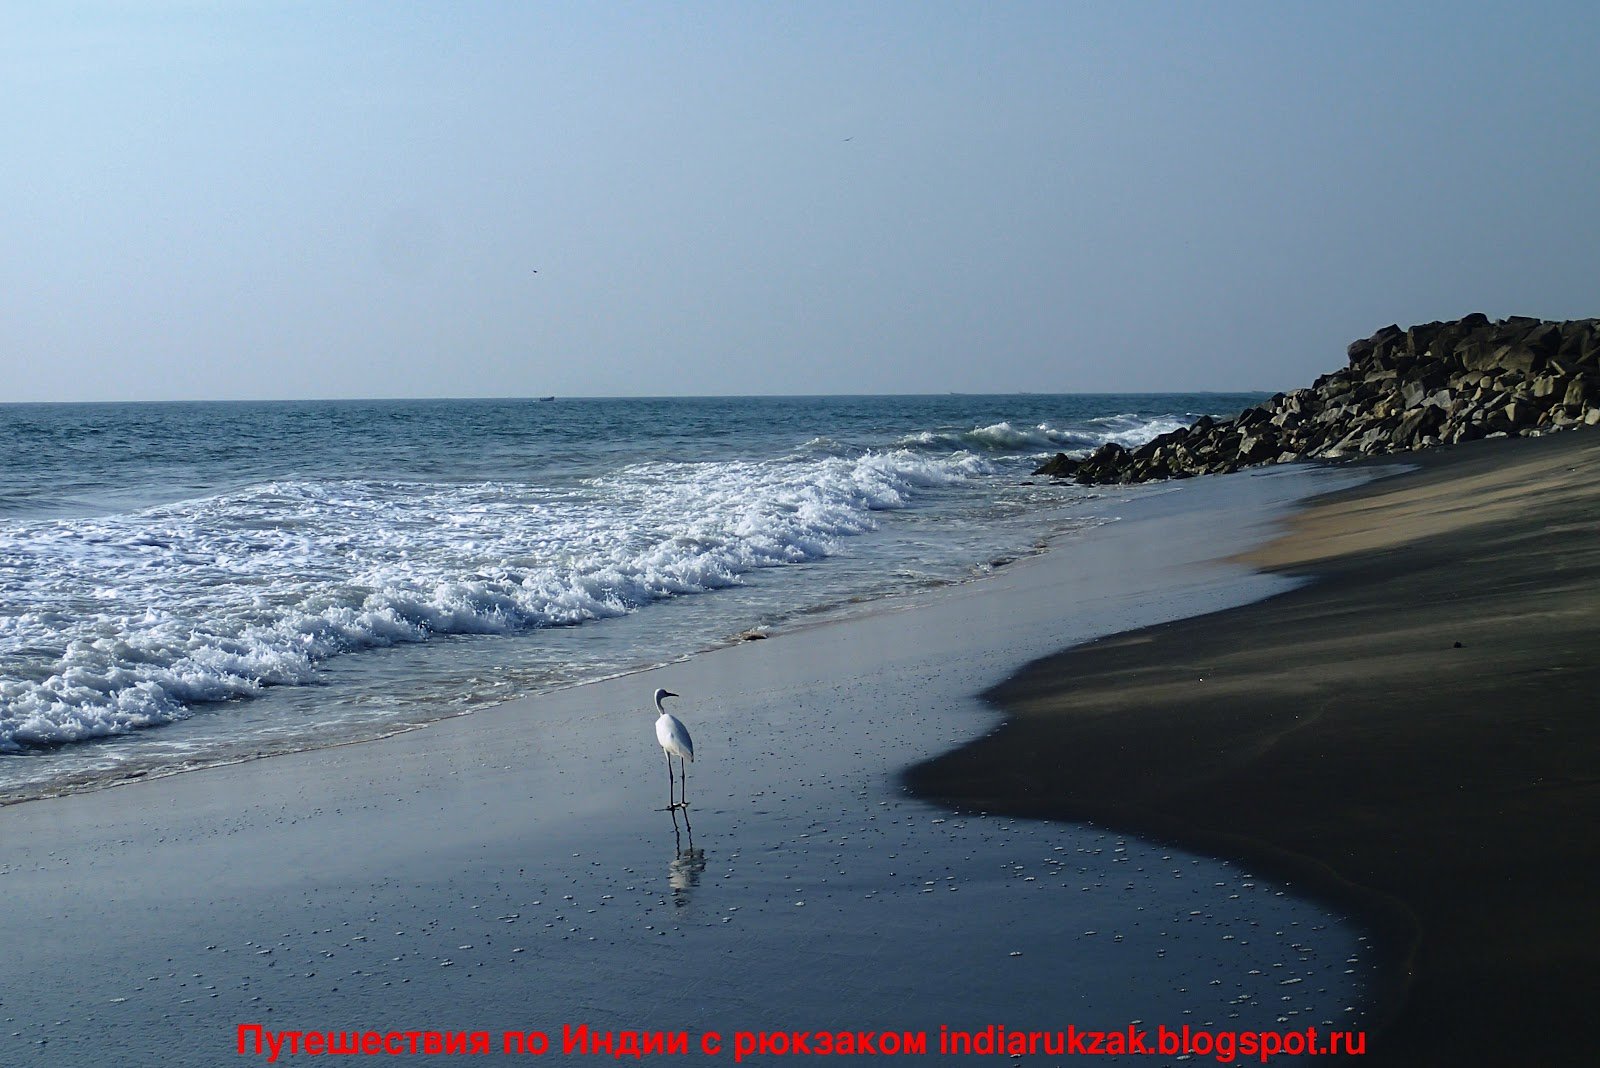 Бенгальский залив индийского океана. Бенгальский залив морской залив. Бенгальский залив фото. Джергалский залив в чёрном море. Курорты бенгальского залива фото.